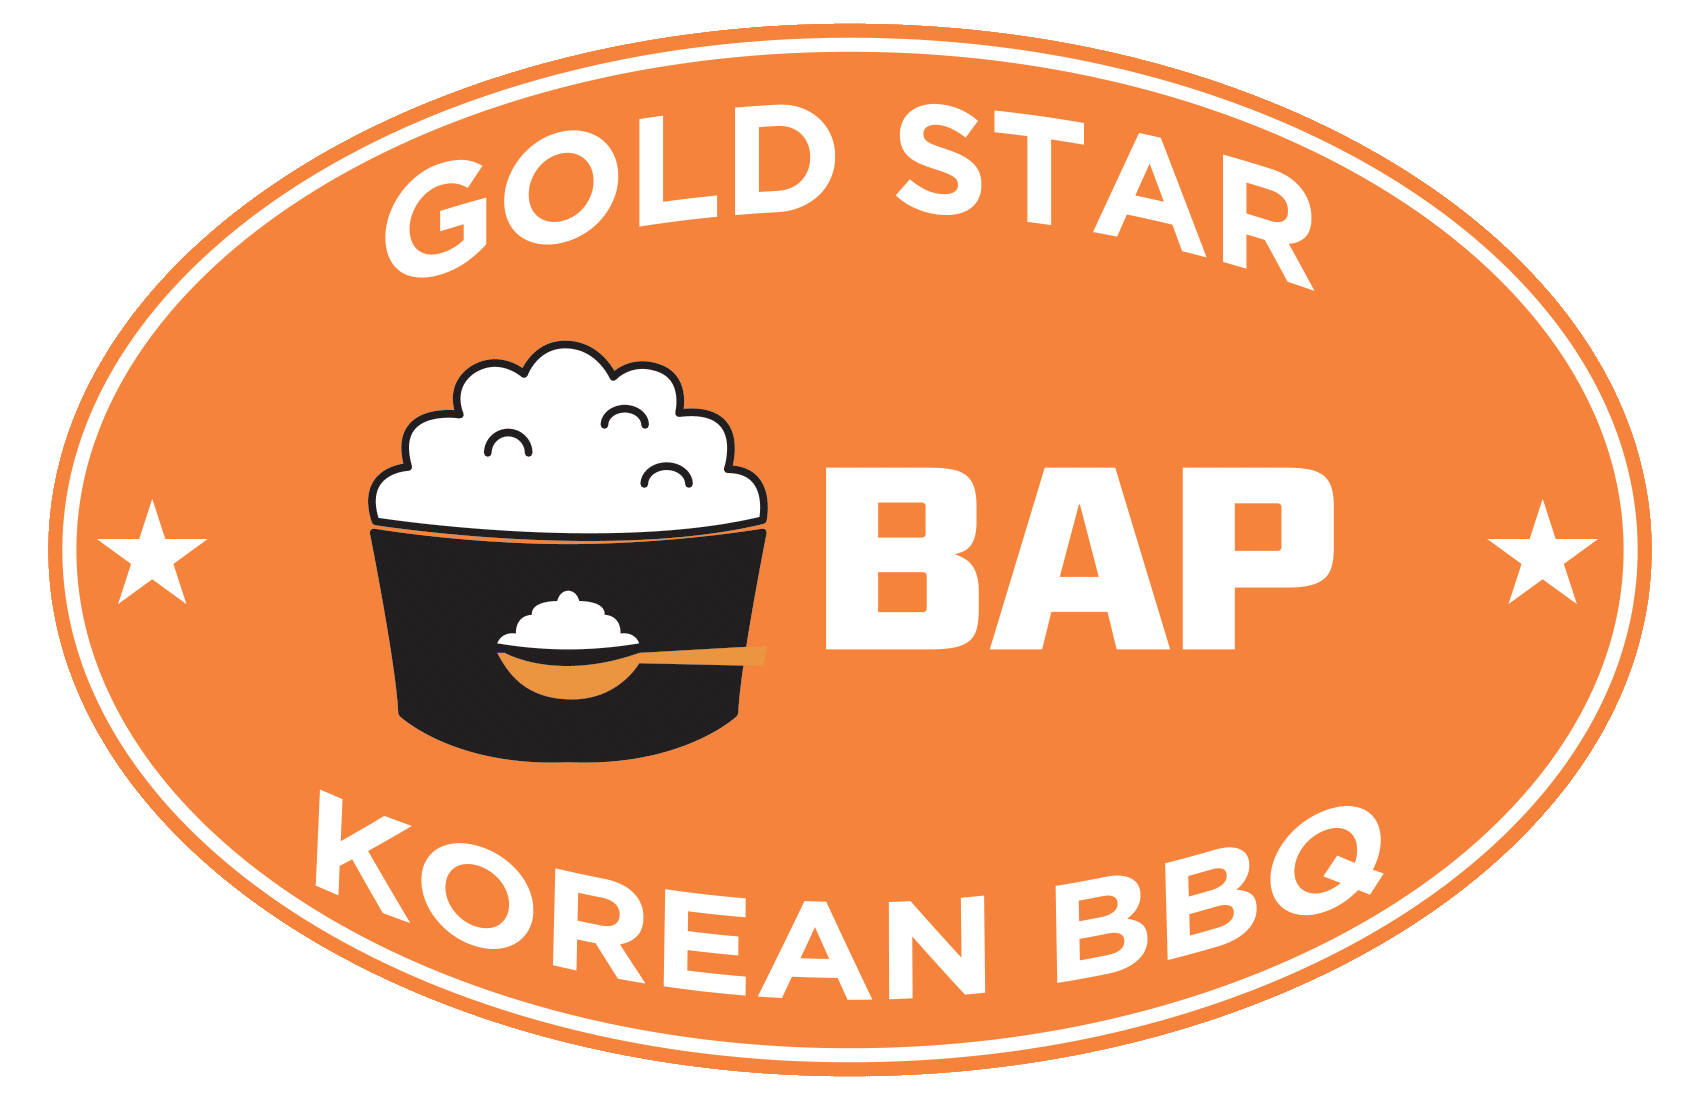 GOLD STAR KOREAN BBQ BAP 11-29-22-1